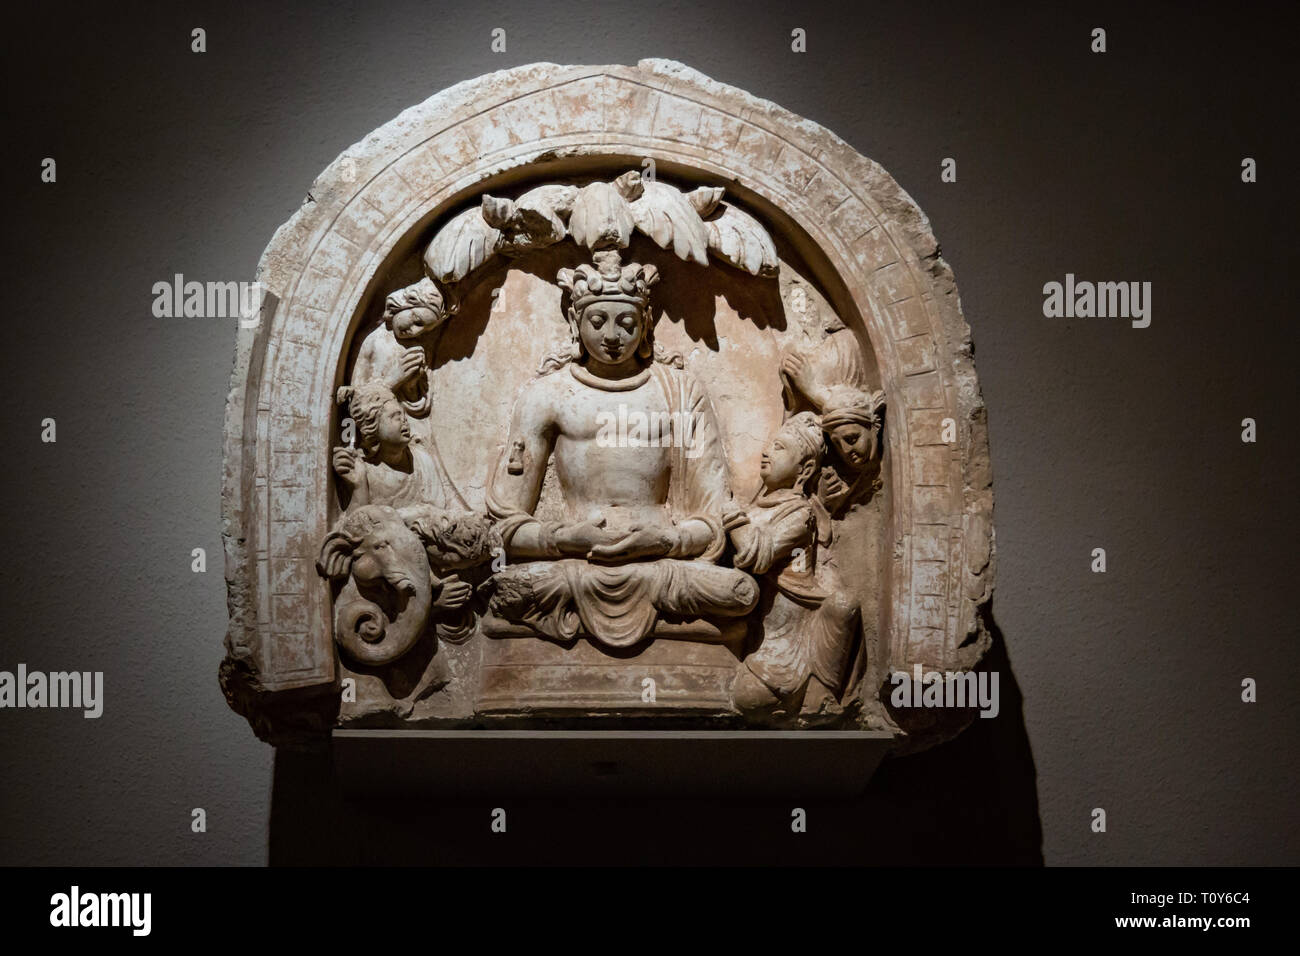 Nicchia con un Buddha seduto e gli operatori è una rara lunetta dal complesso buddista a Hadda, Afghanistan. Shakyamuni, il Buddha storico nato come principe Siddharta, è mostrato come un bodhisattva indossando la jeweled turbante e ornamenti di un royal. È in mostra al Metropolitan Museum of Art di New York City. Foto Stock